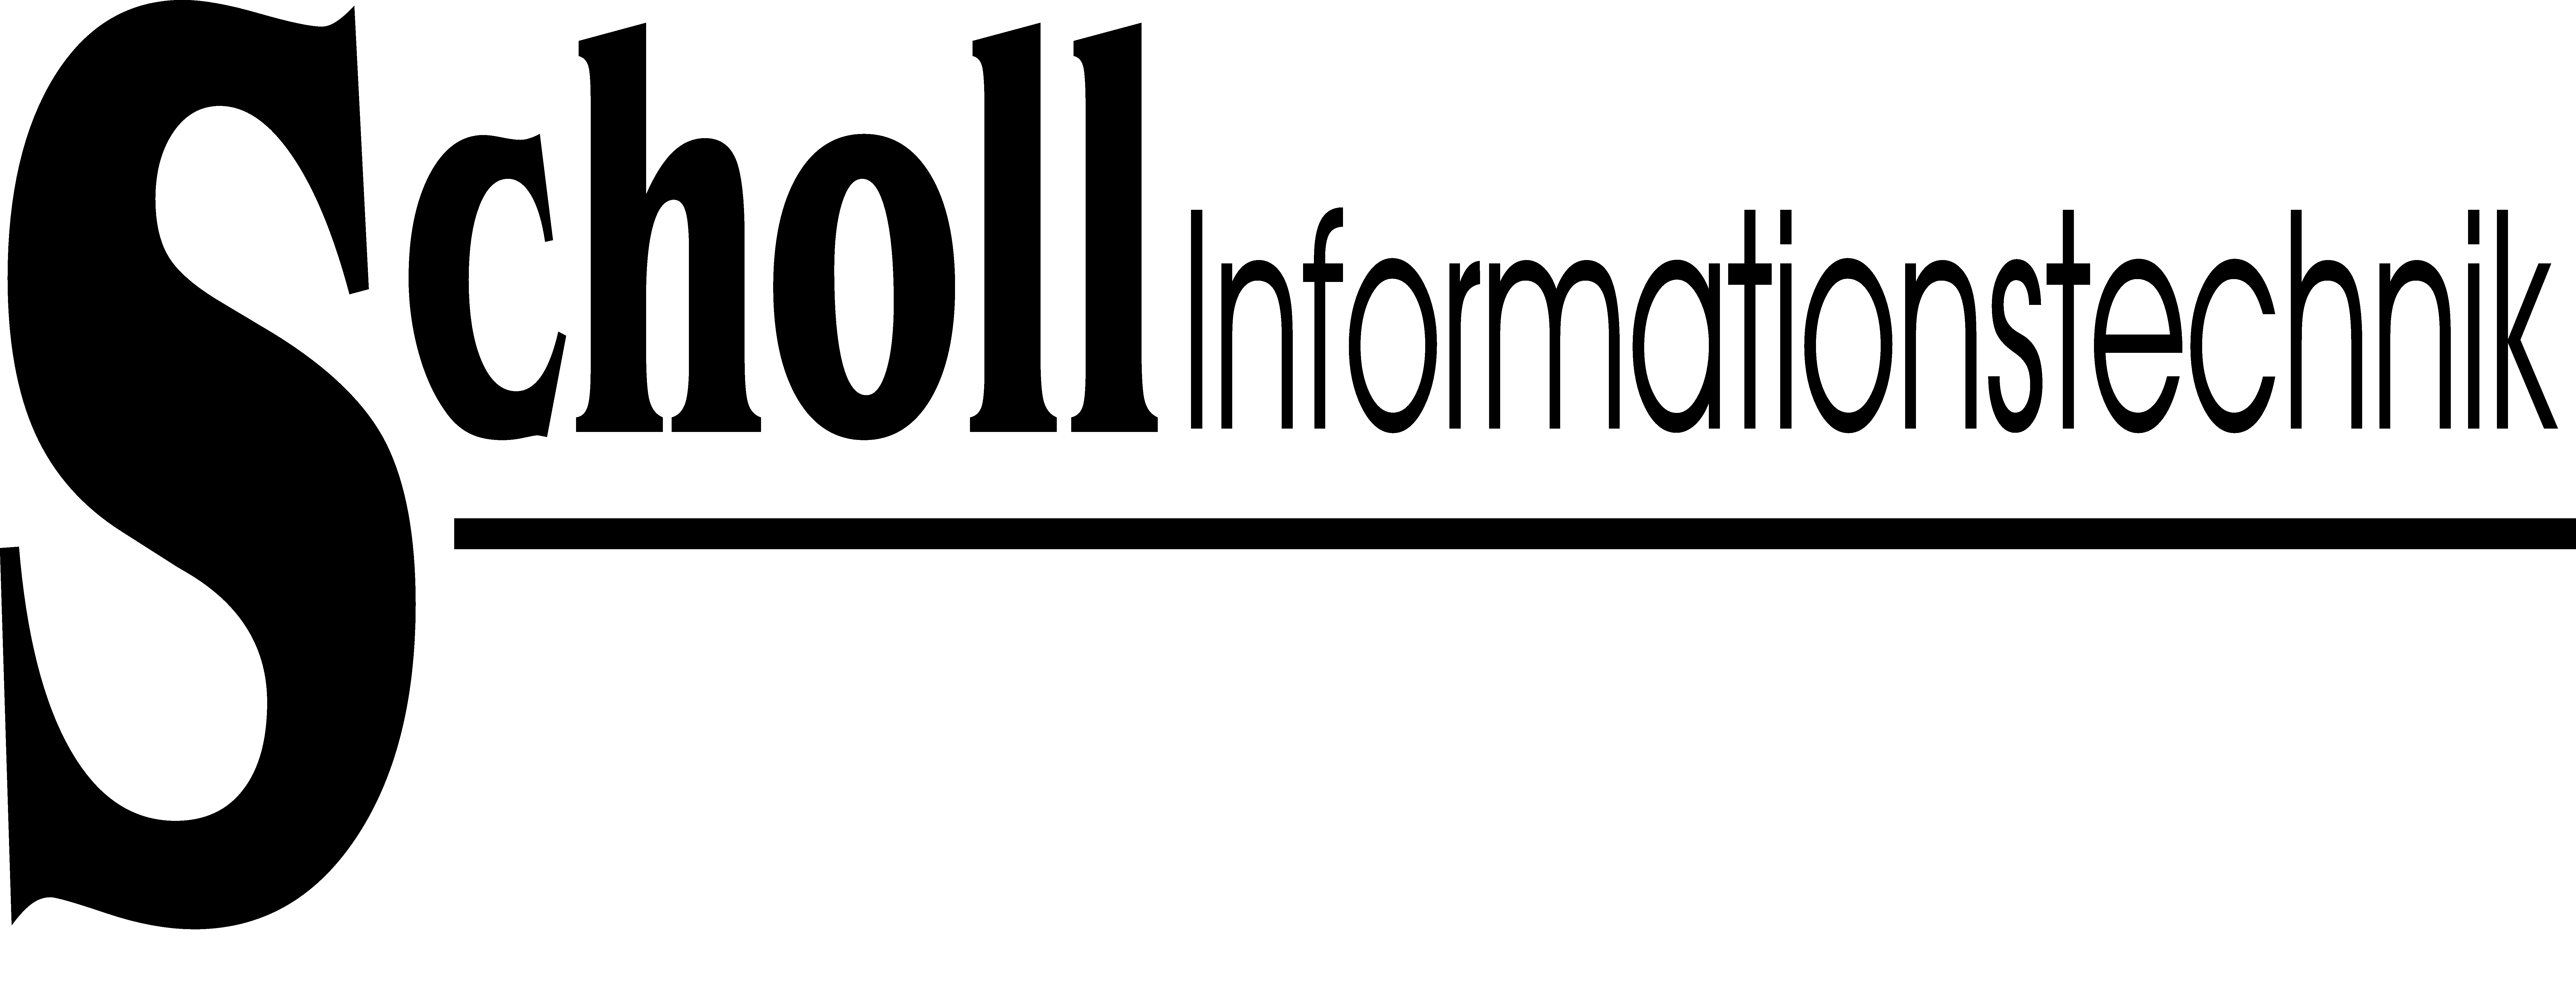 logo-informationstechnik